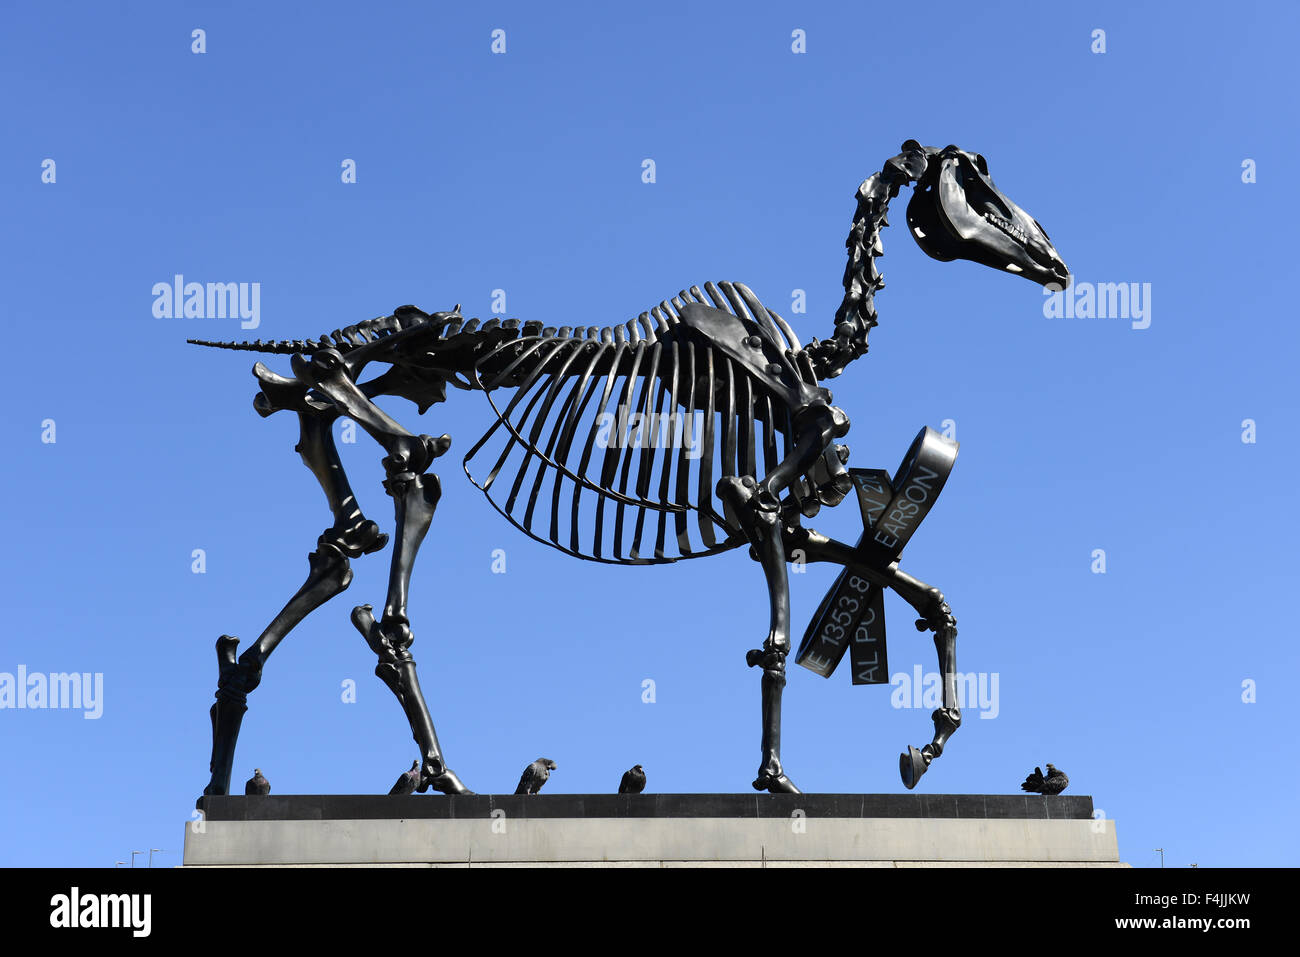 Quatrième sculpture plinthe, Don cheval par Hans Haacke à Trafalgar Square, Londres, Angleterre, Royaume-Uni Banque D'Images